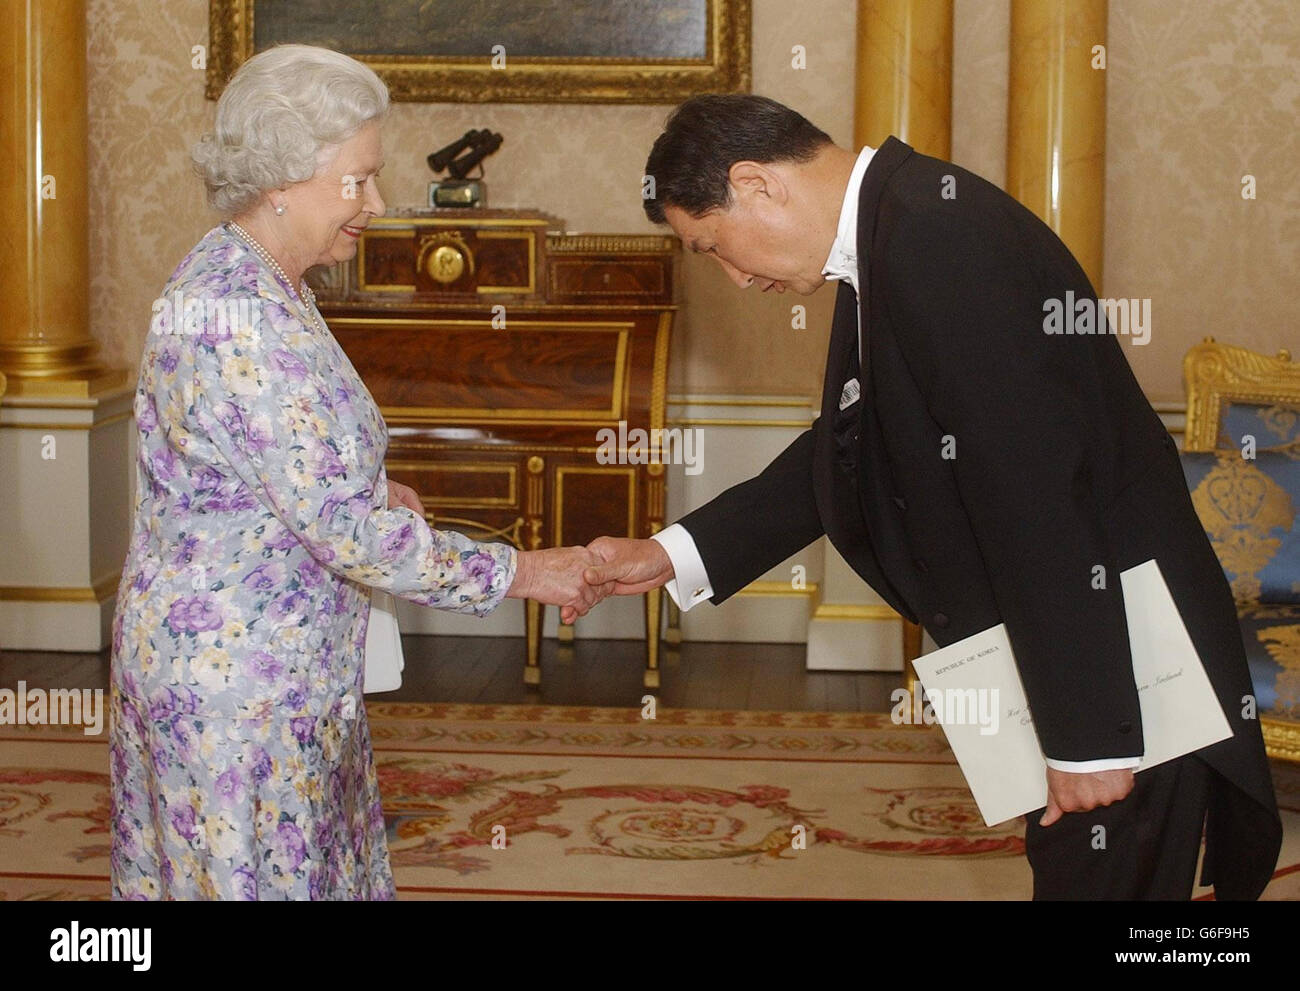 La reine Elizabeth II de Grande-Bretagne reçoit l'ambassadeur de la République de Corée, Lee Tae-sik, au Palais de Buckingham, à Londres. Banque D'Images